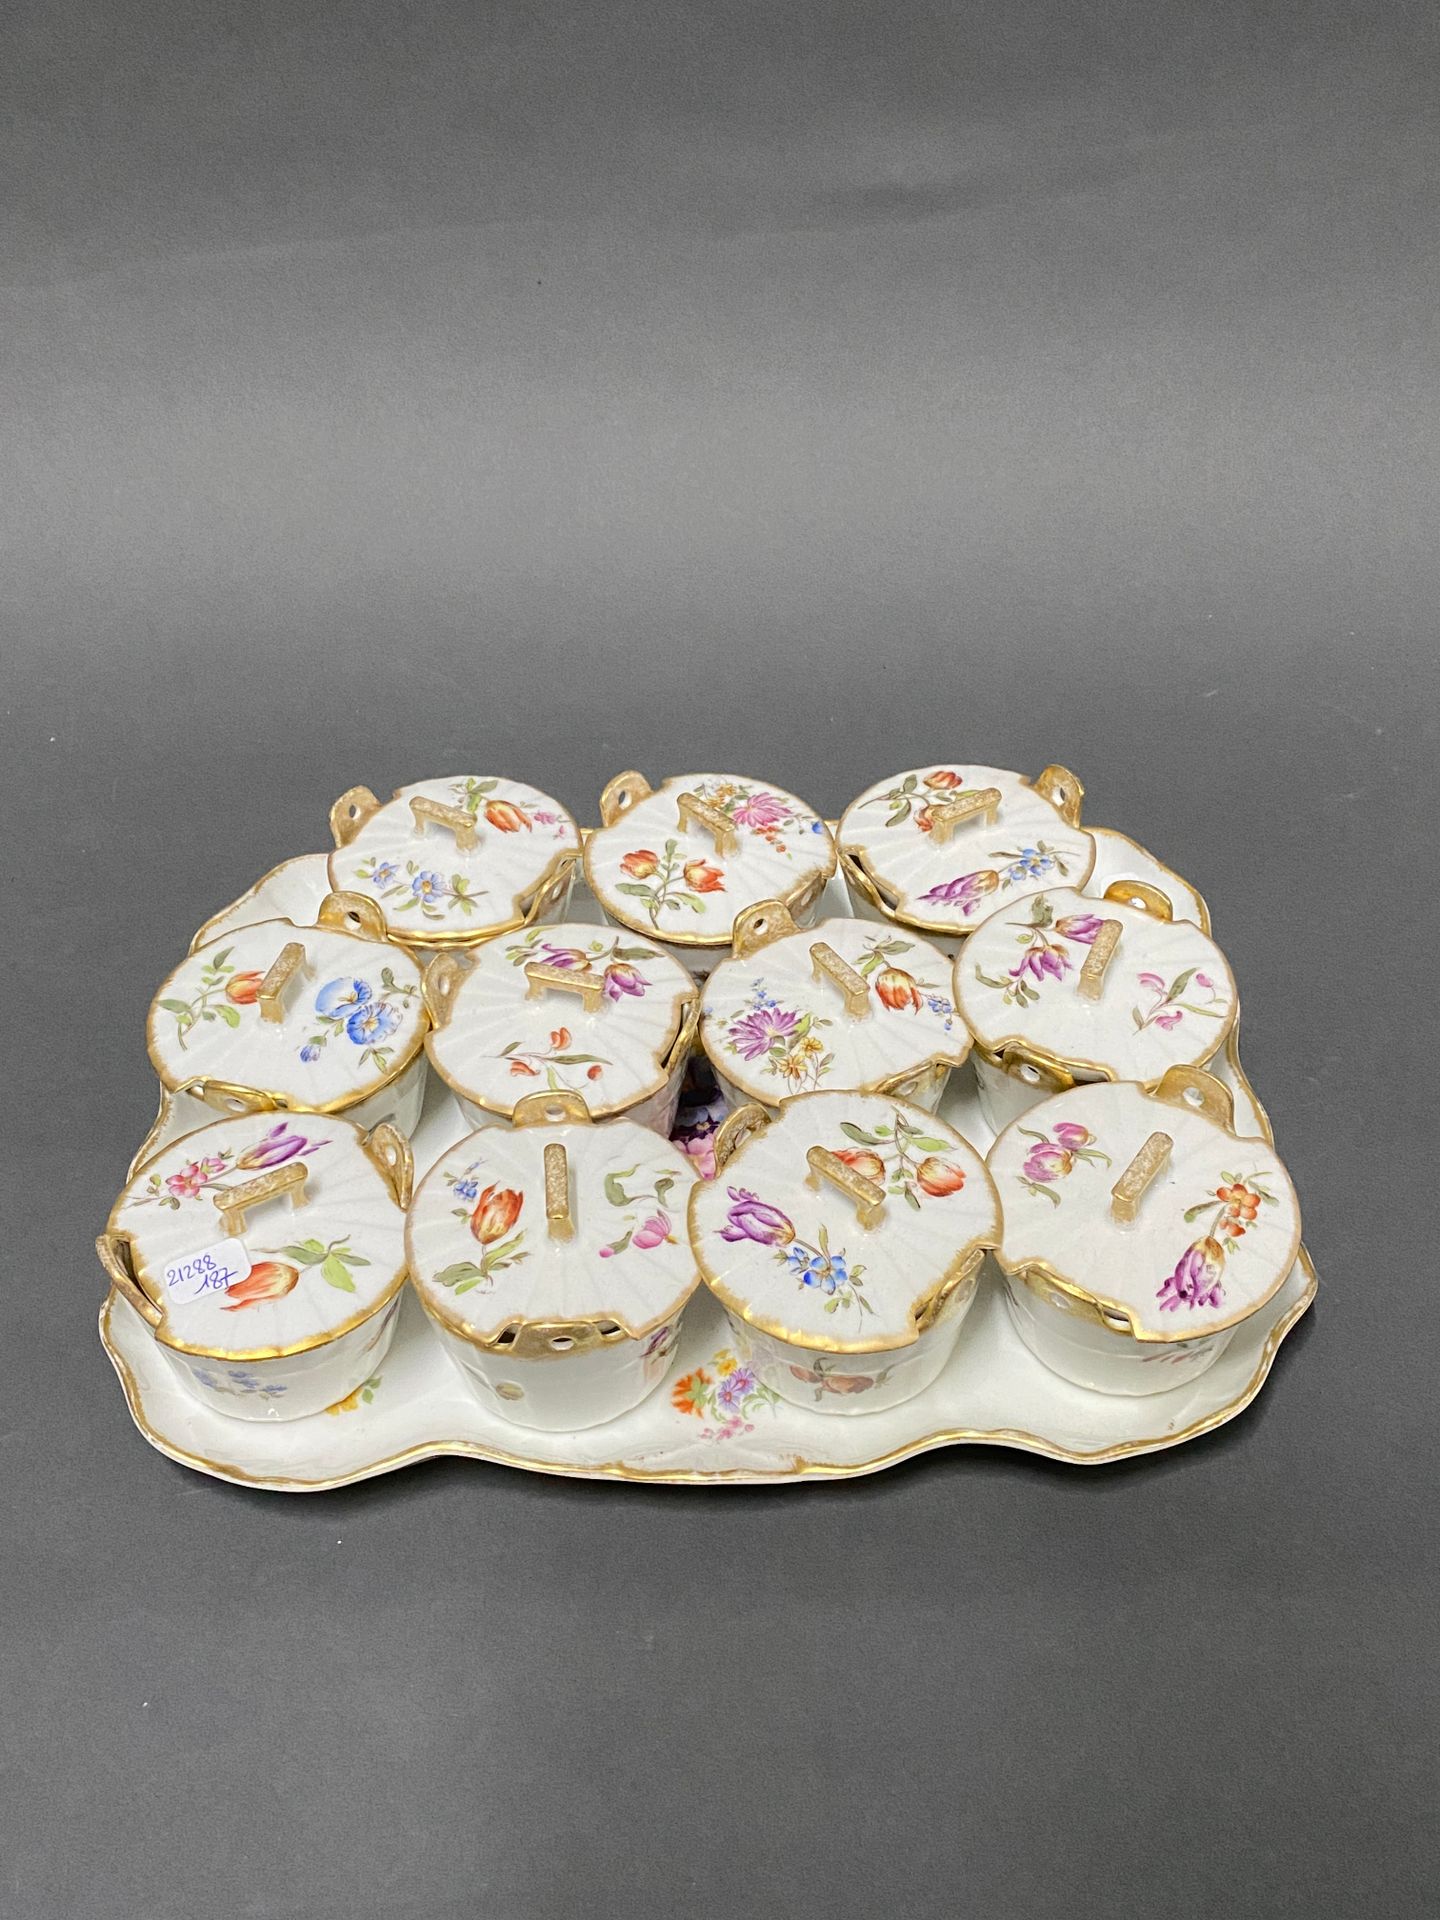 Null 一套11个有盖黄油盘和一个带花饰的瓷质托盘

20世纪初

29 x 33厘米（托盘）